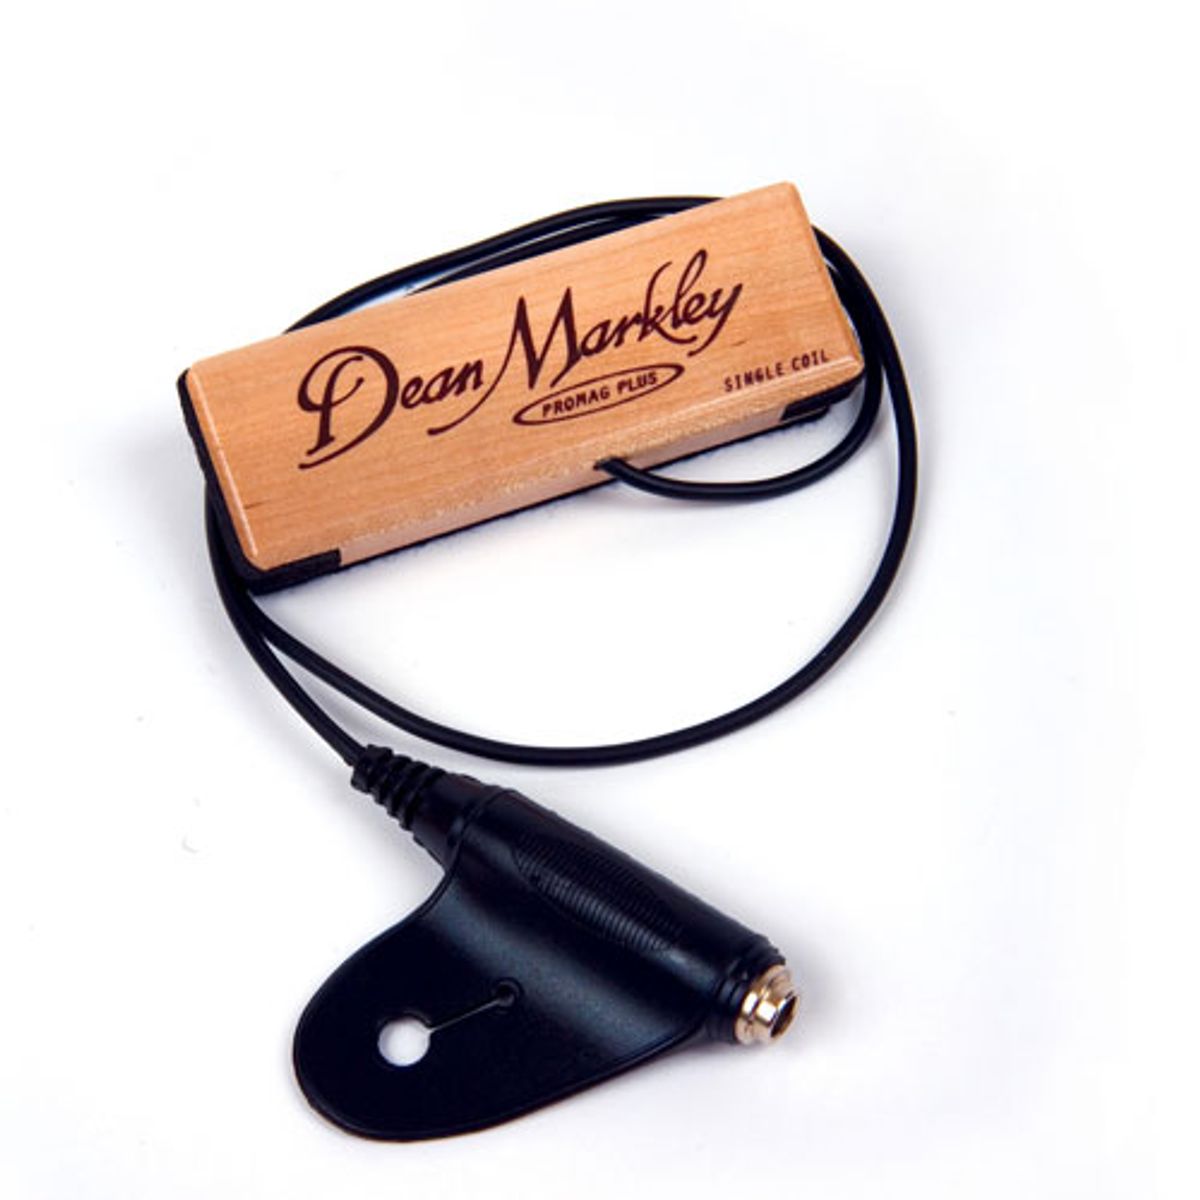 Dean Markley Announces XM Series Acoustic Pickup